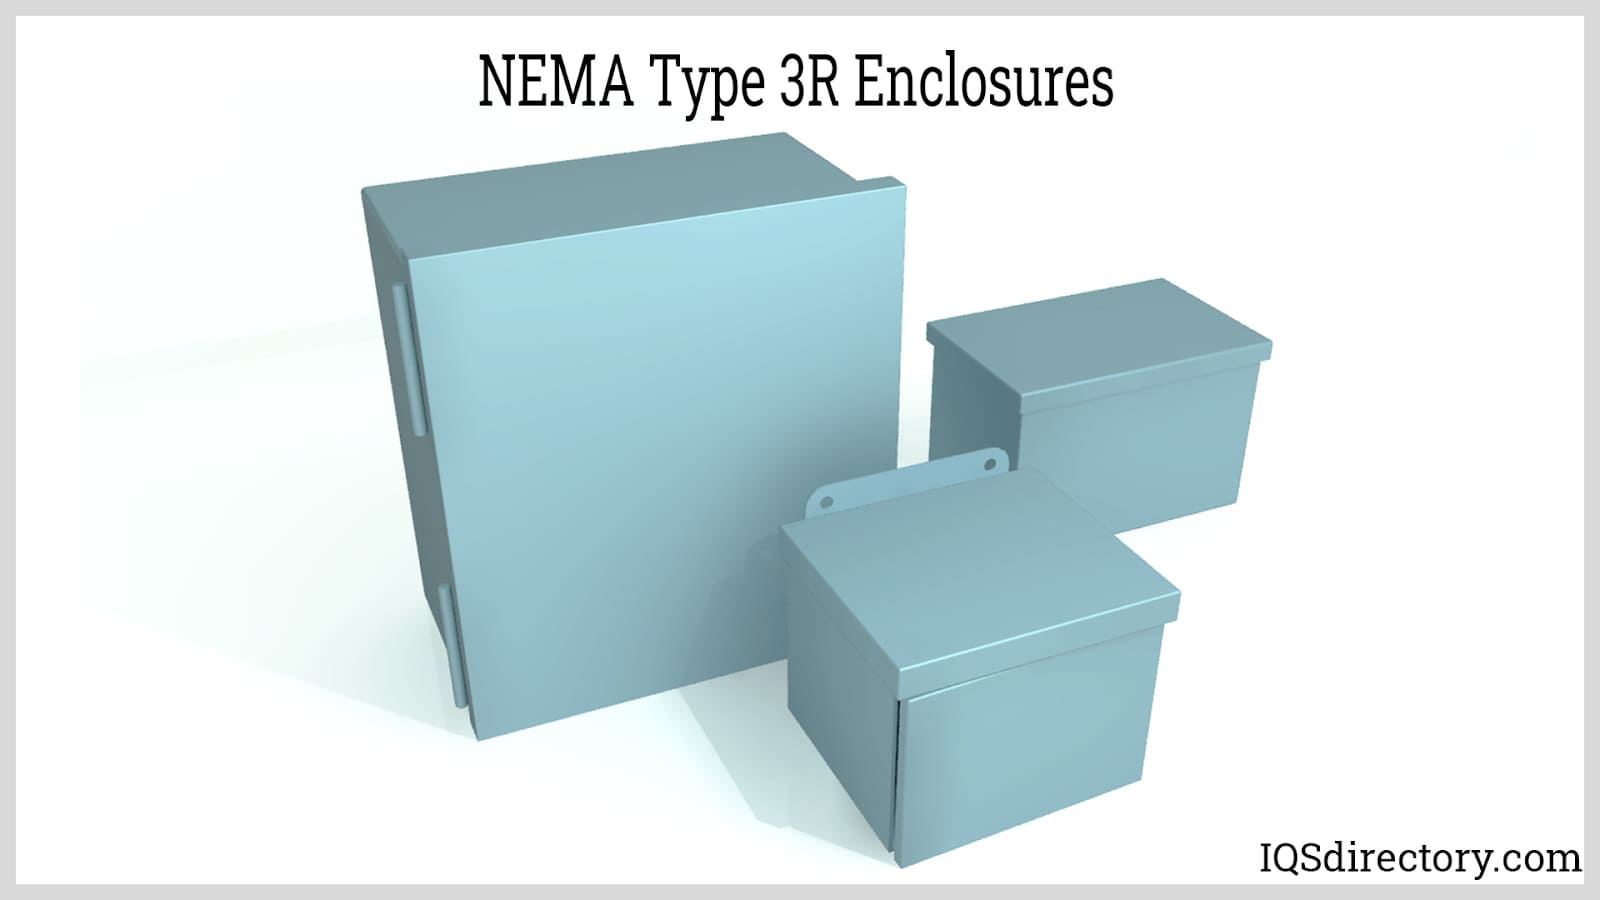 NEMA Type 3R Enclosures